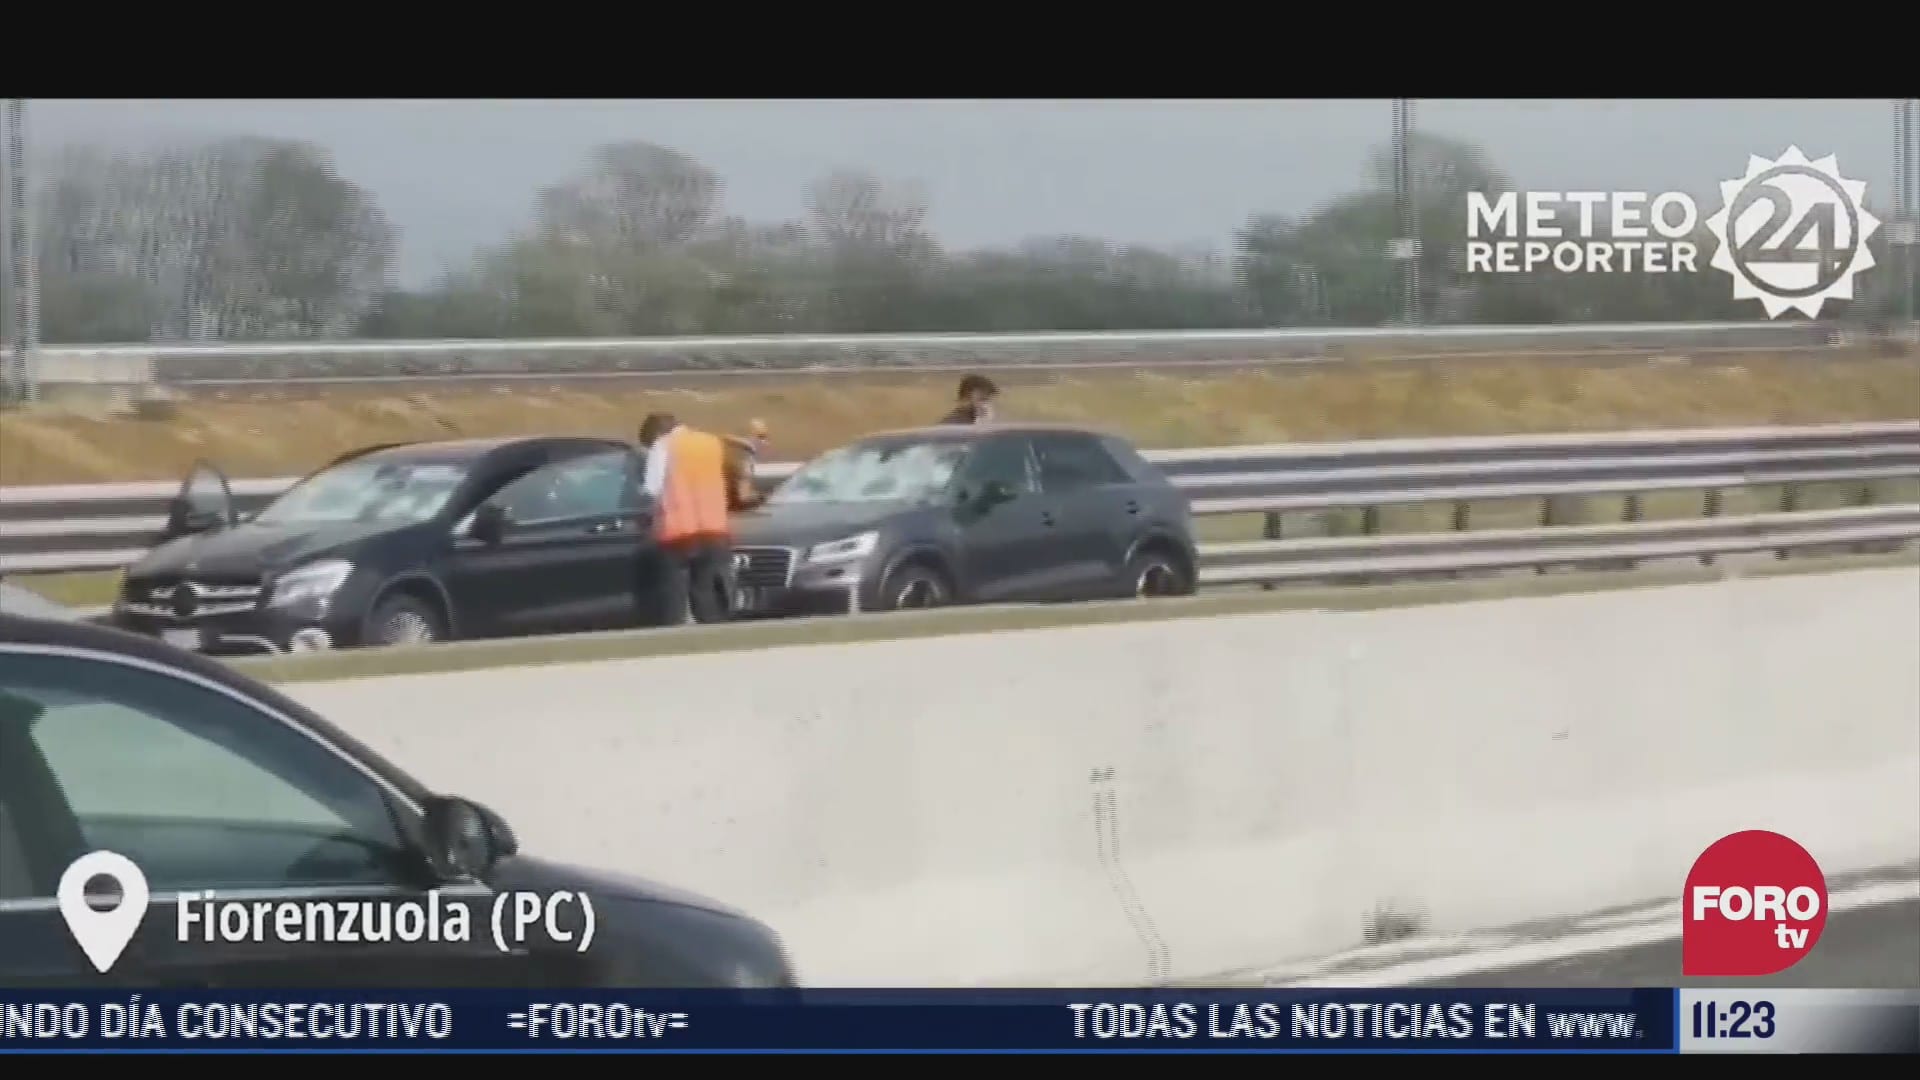 granizada causa danos a decenas de vehiculos en carretera de italia